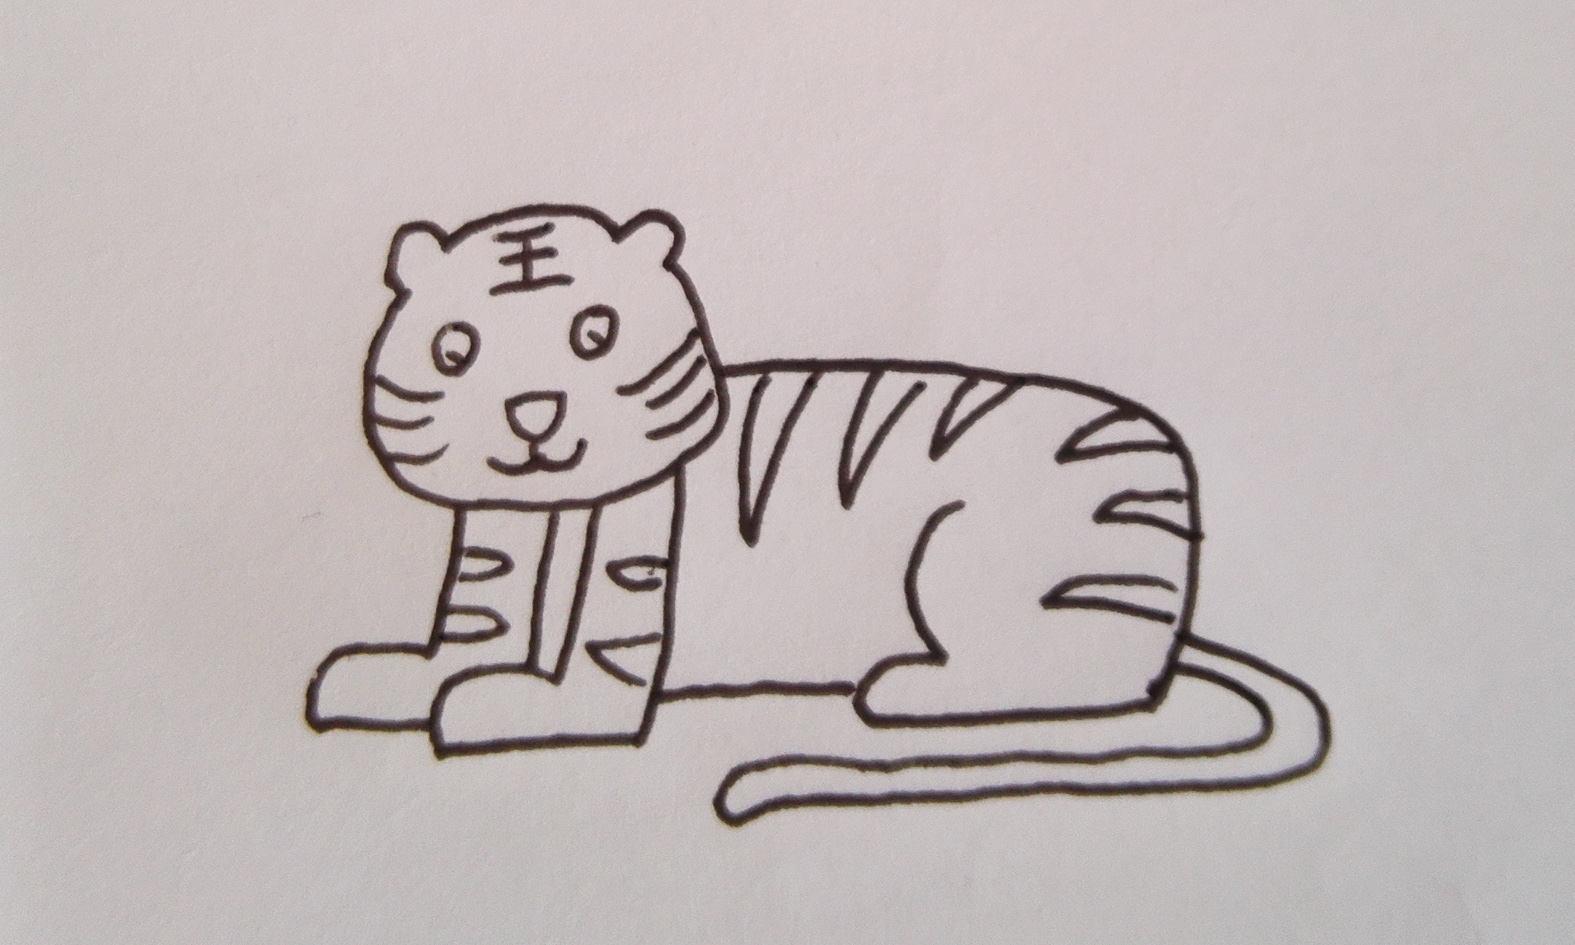 老虎的尾巴怎么画简单图片